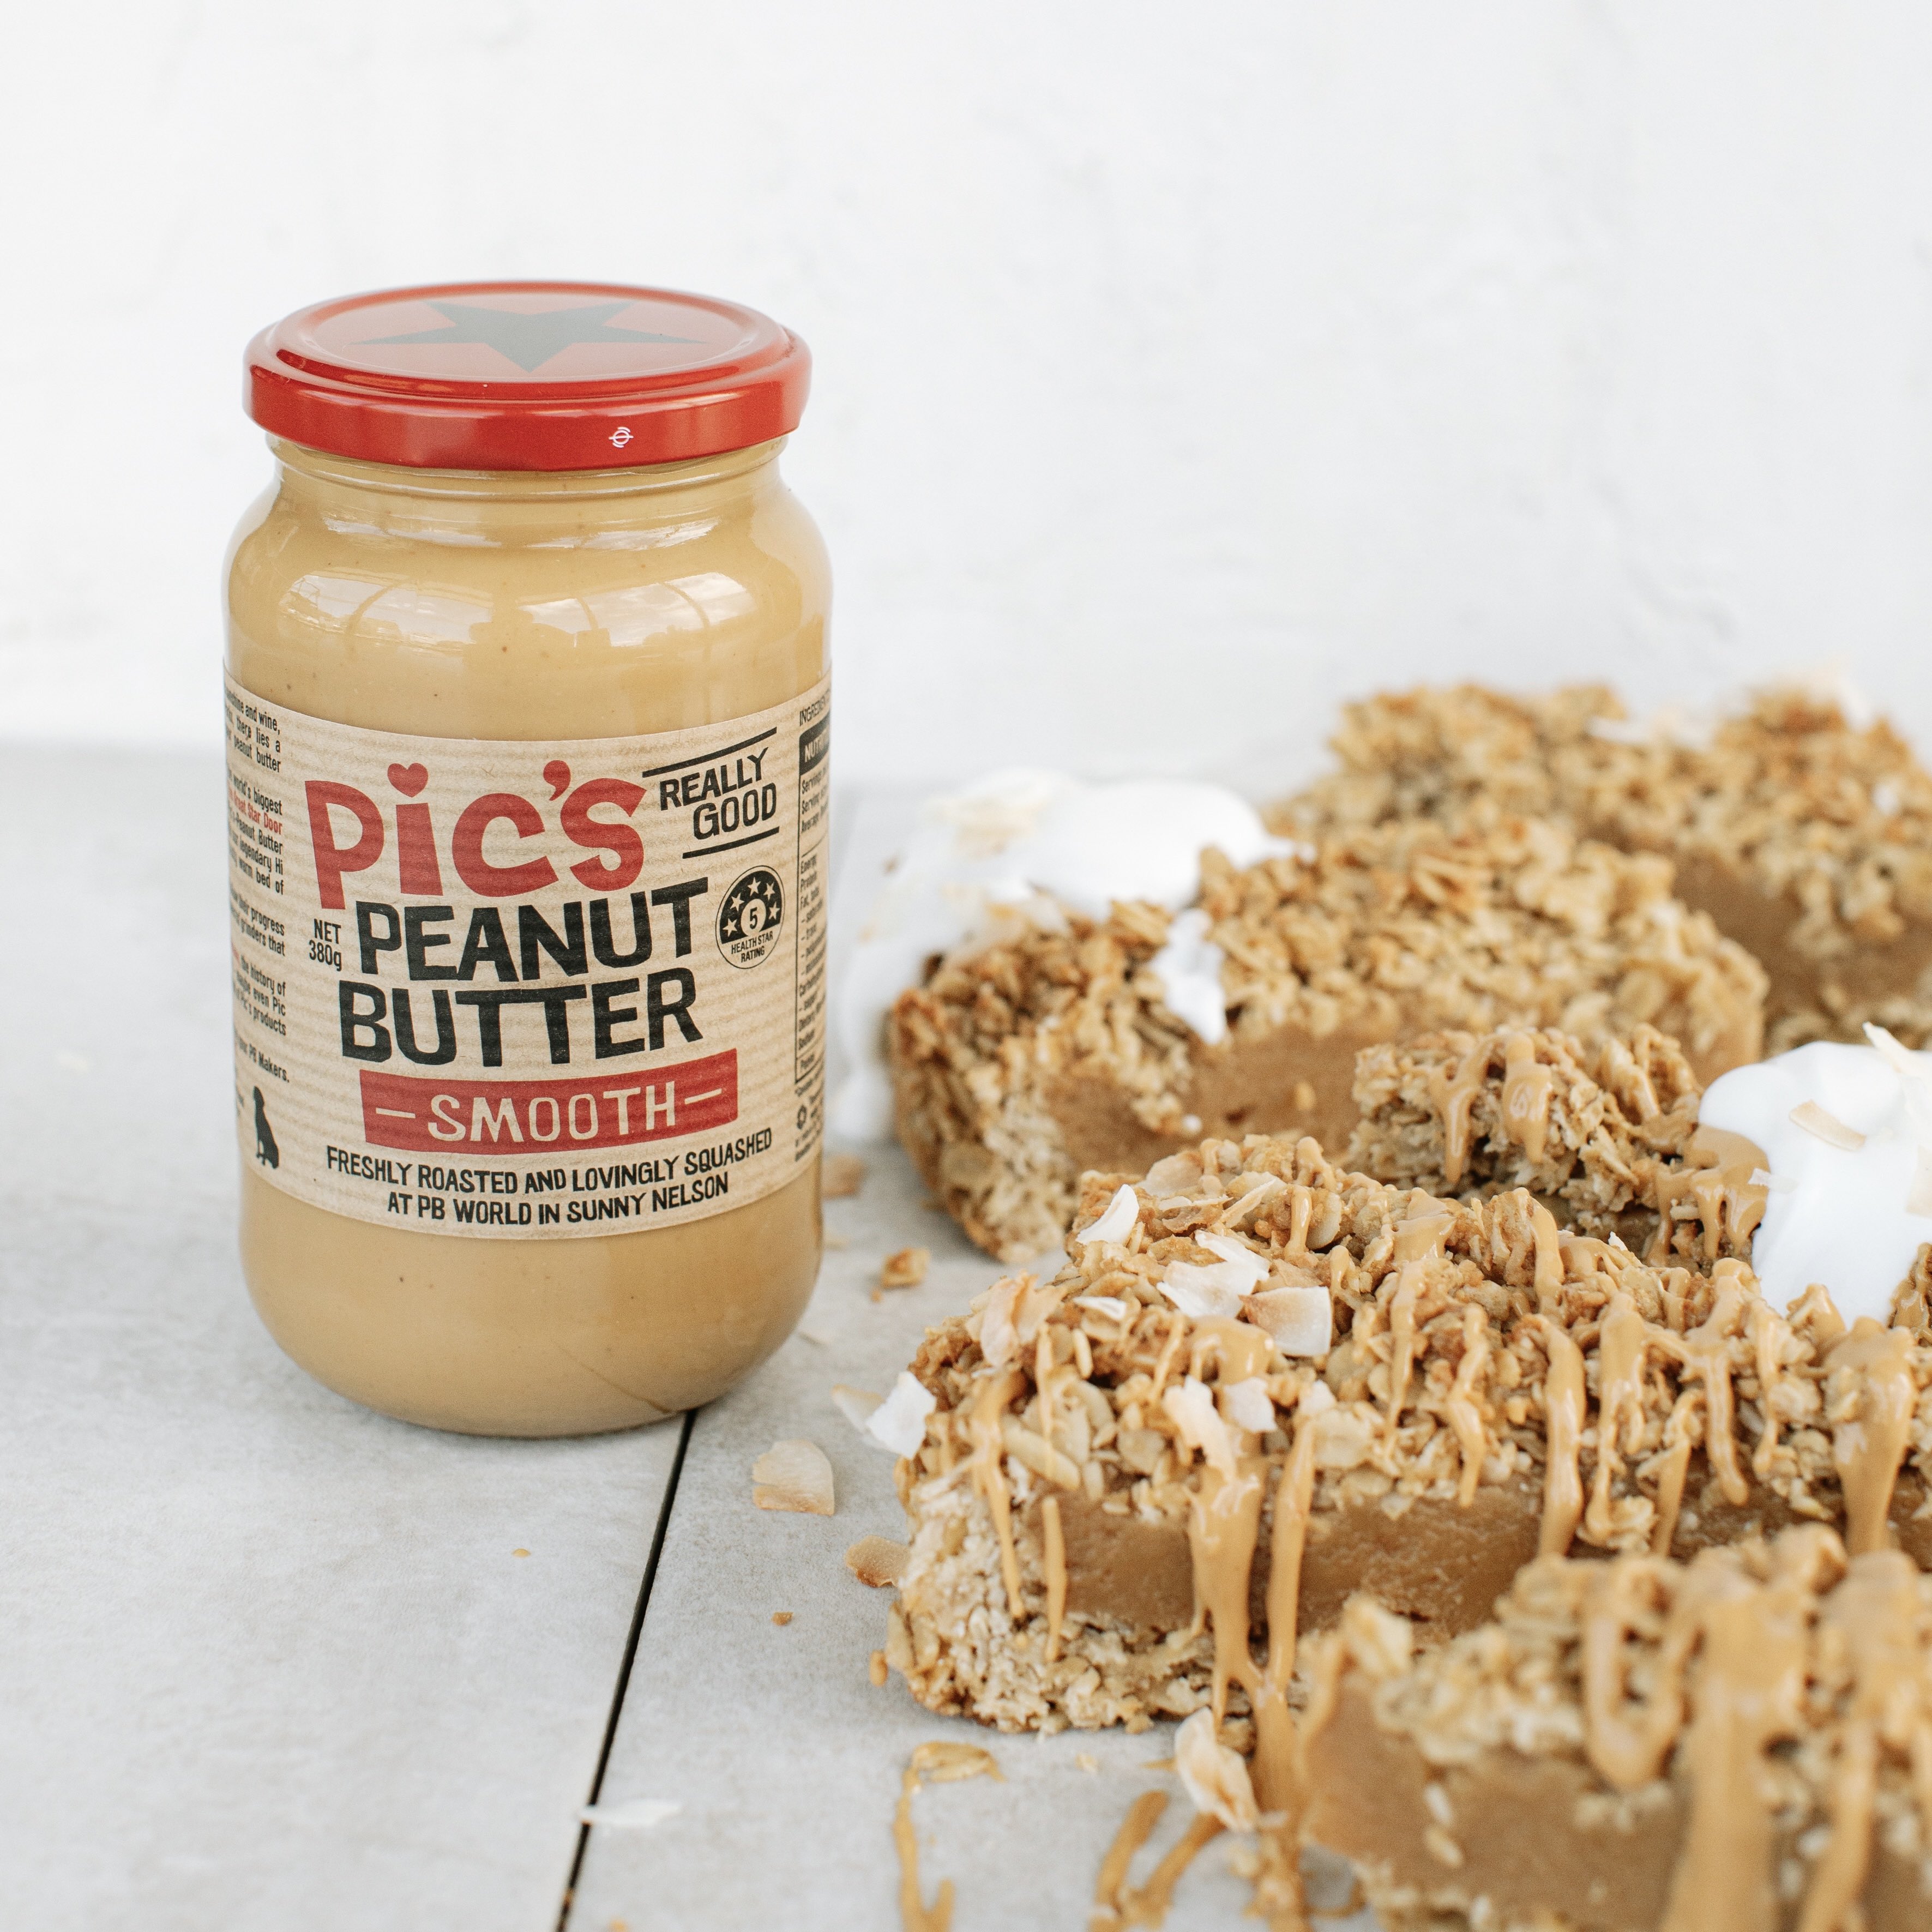 人気アイテム ピックスピーナッツバター なめらか スムース 380g 無糖 食品添加物不使用 塩 ニュージーランド産 Pic's Peanut  Butter